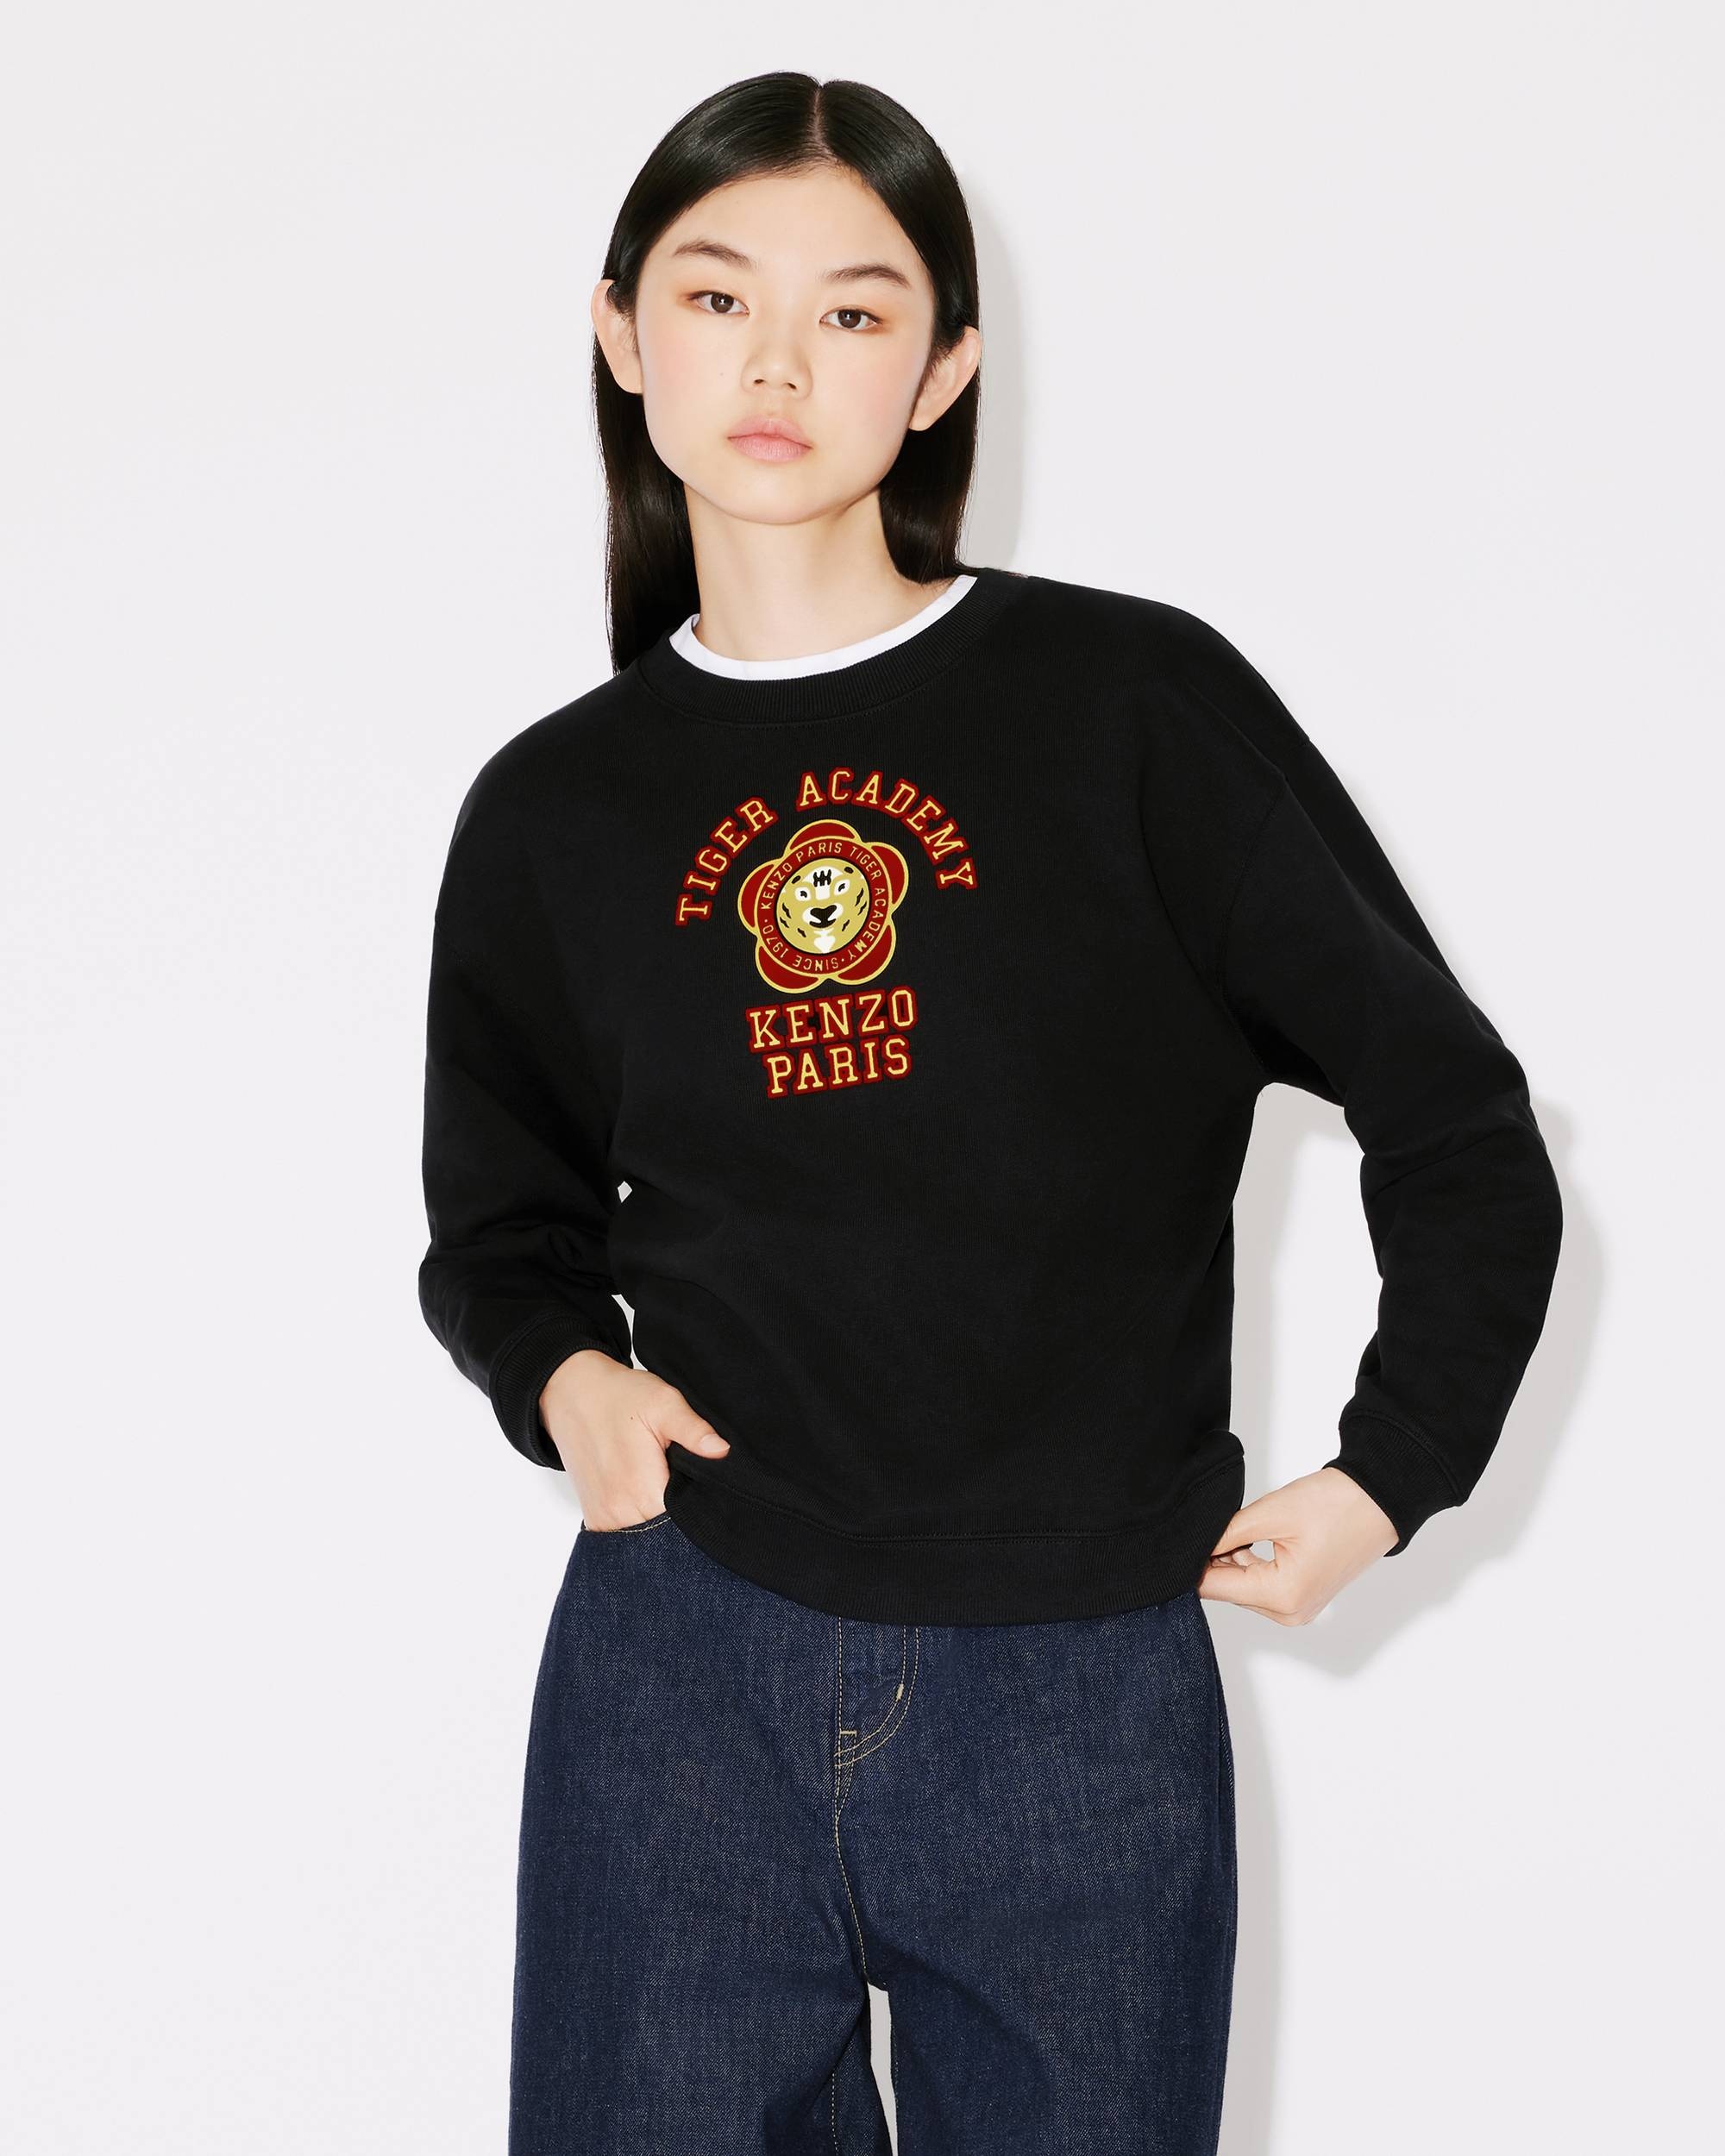 'KENZO Tiger Academy' sweatshirt - 3